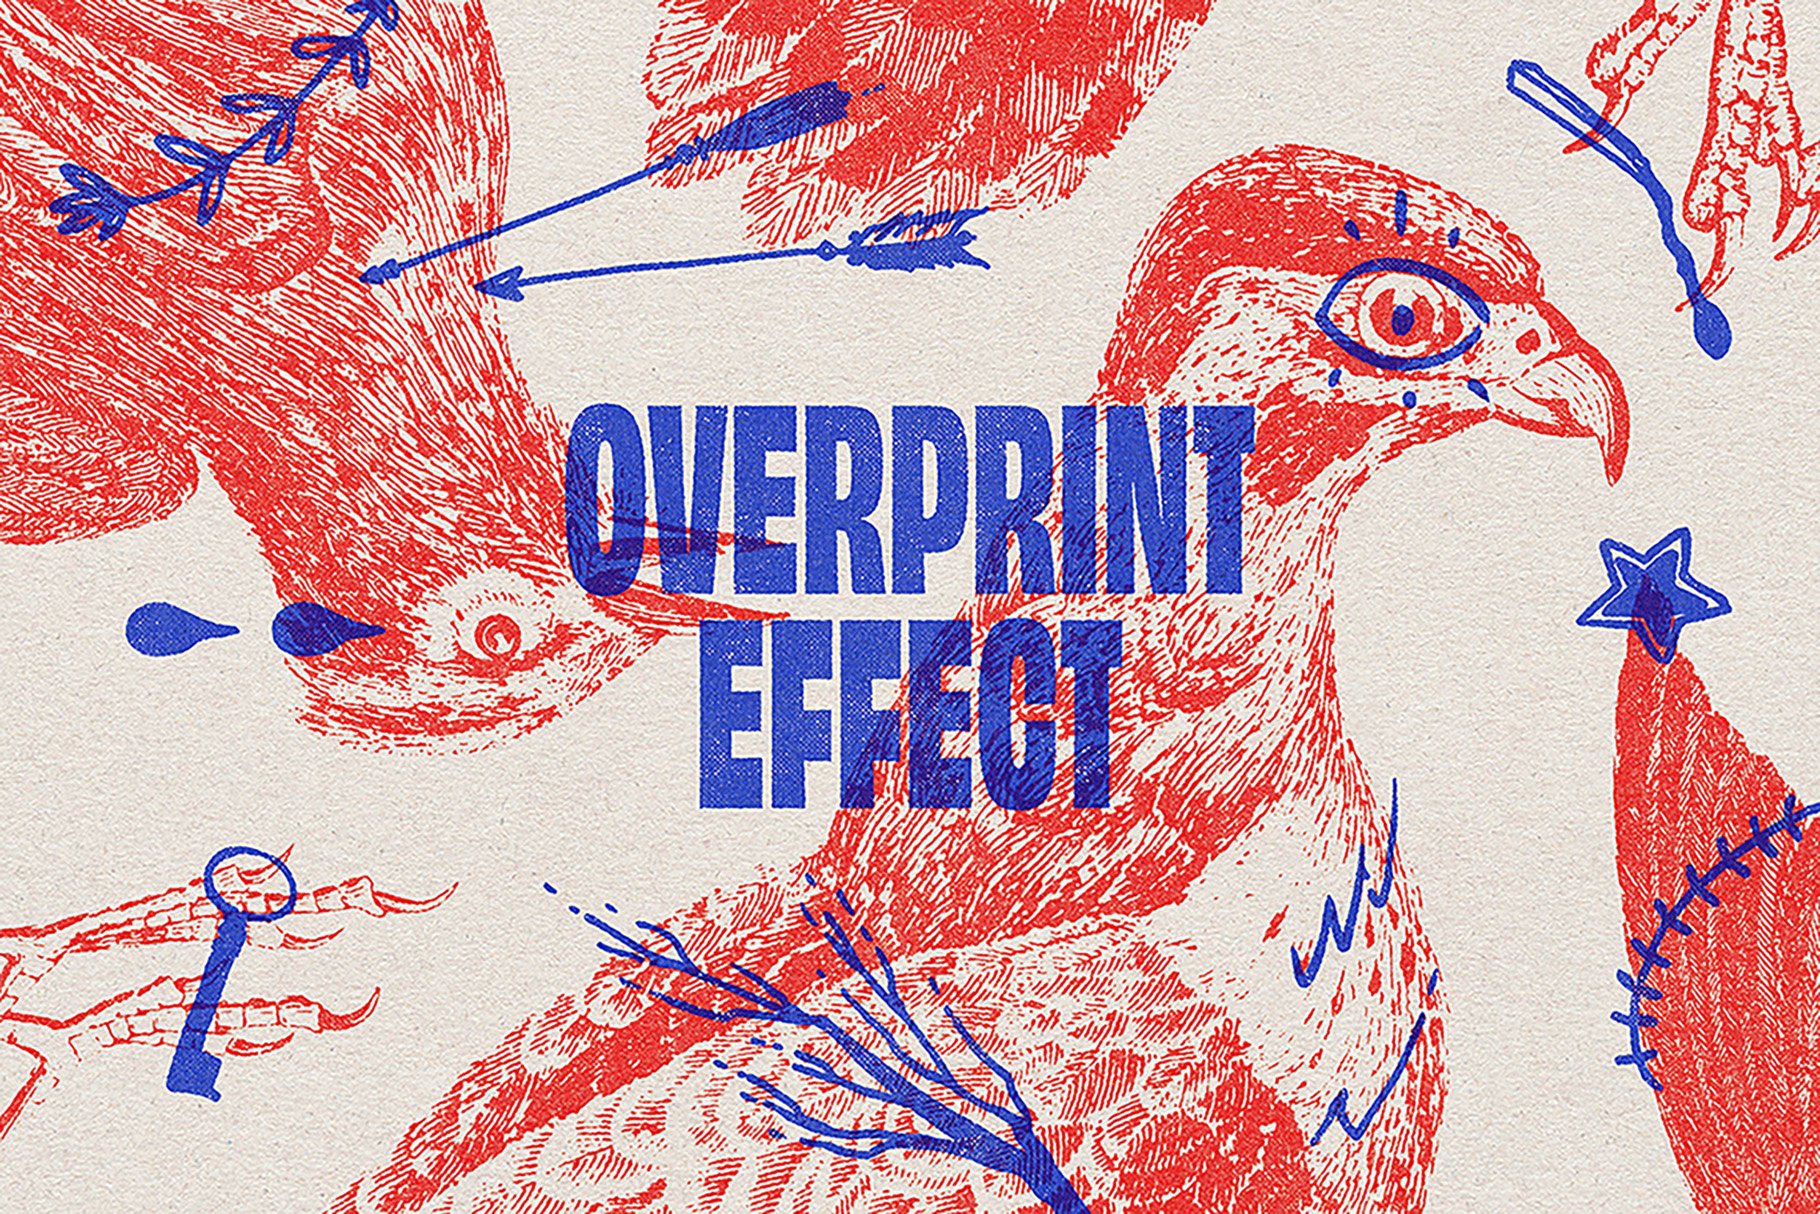 Overprint